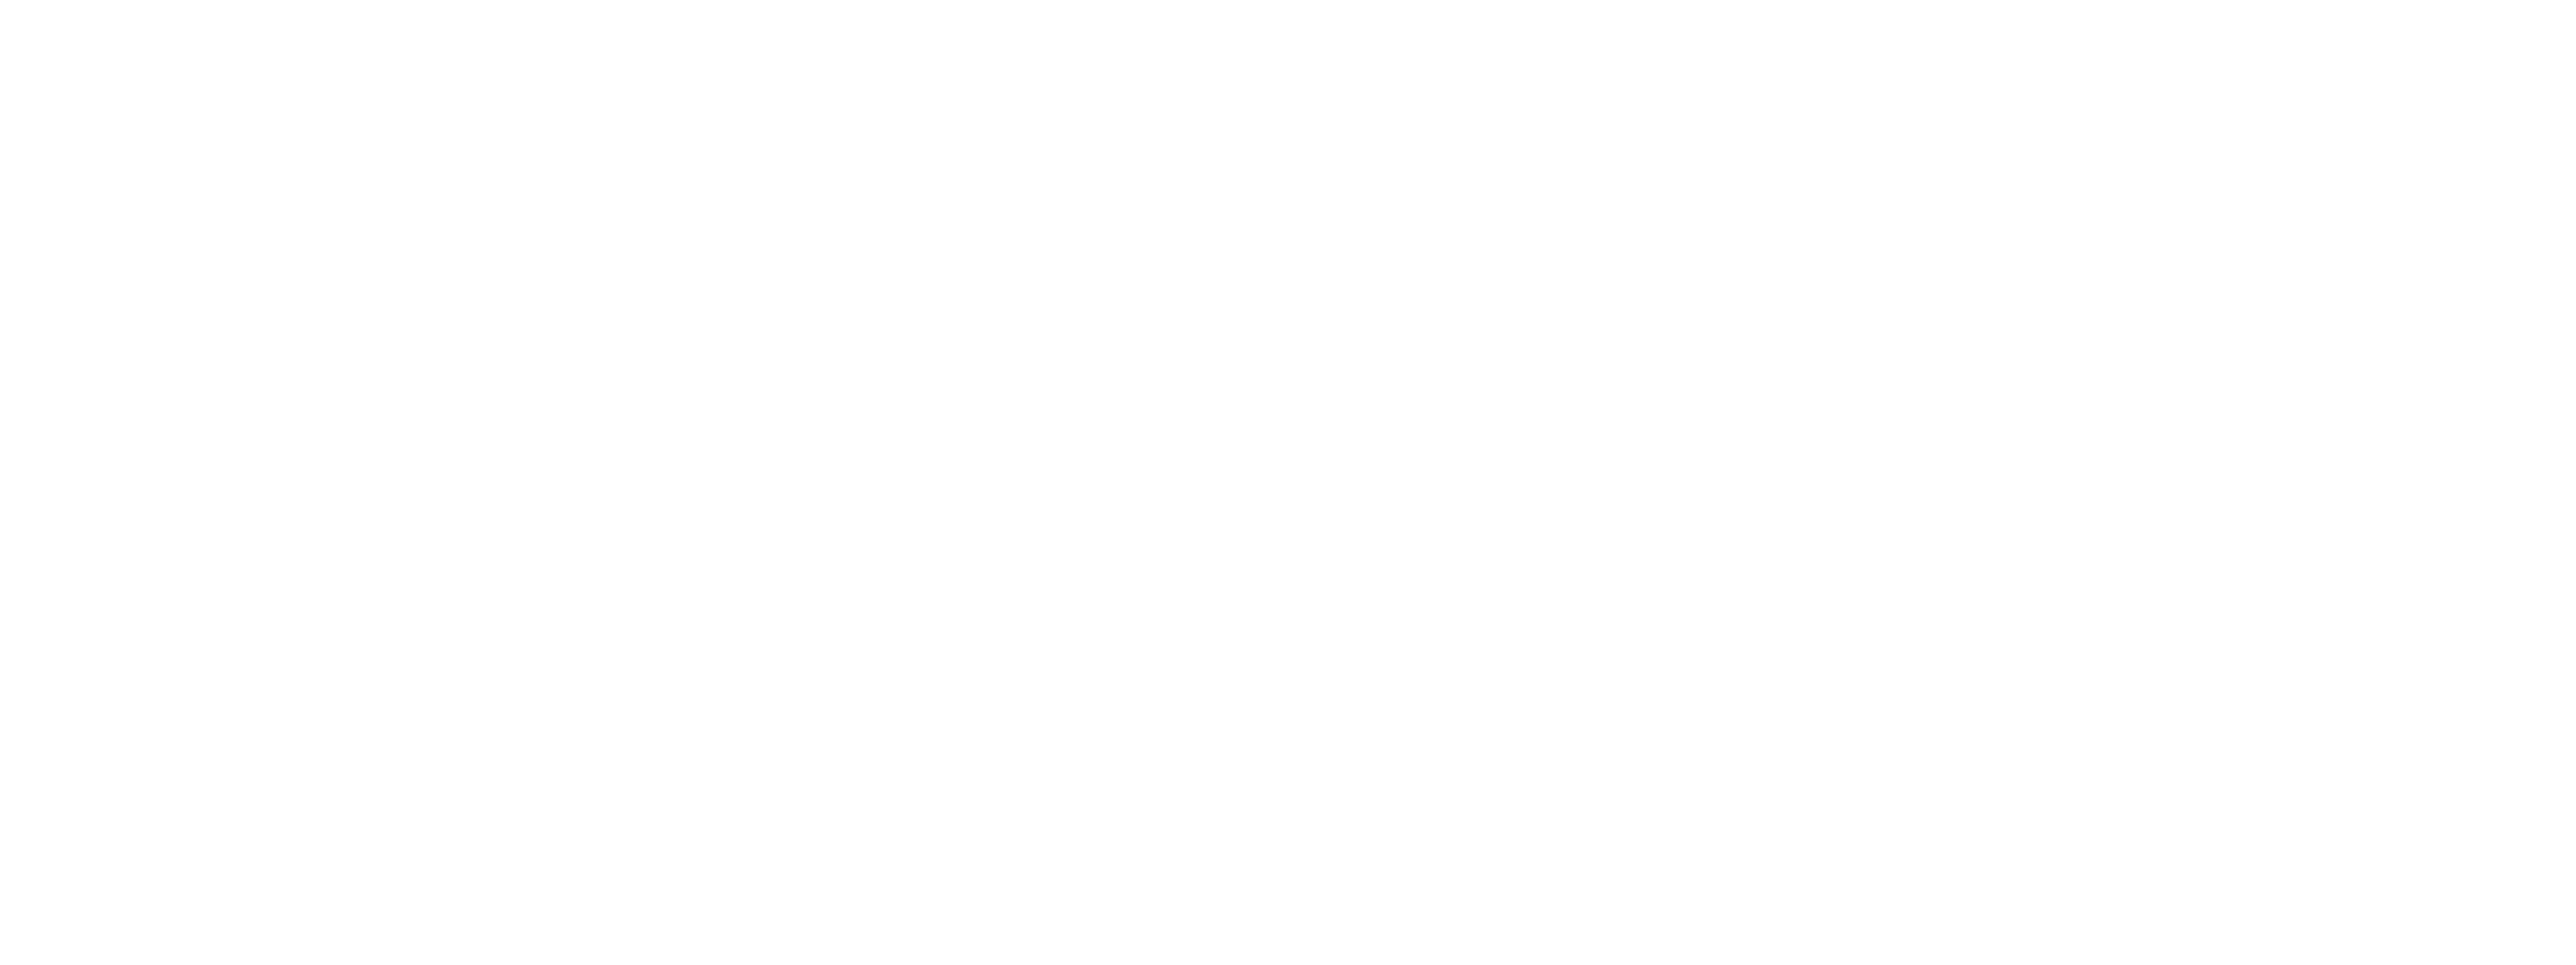 Kaidanojan_kartano-VALKOINEN